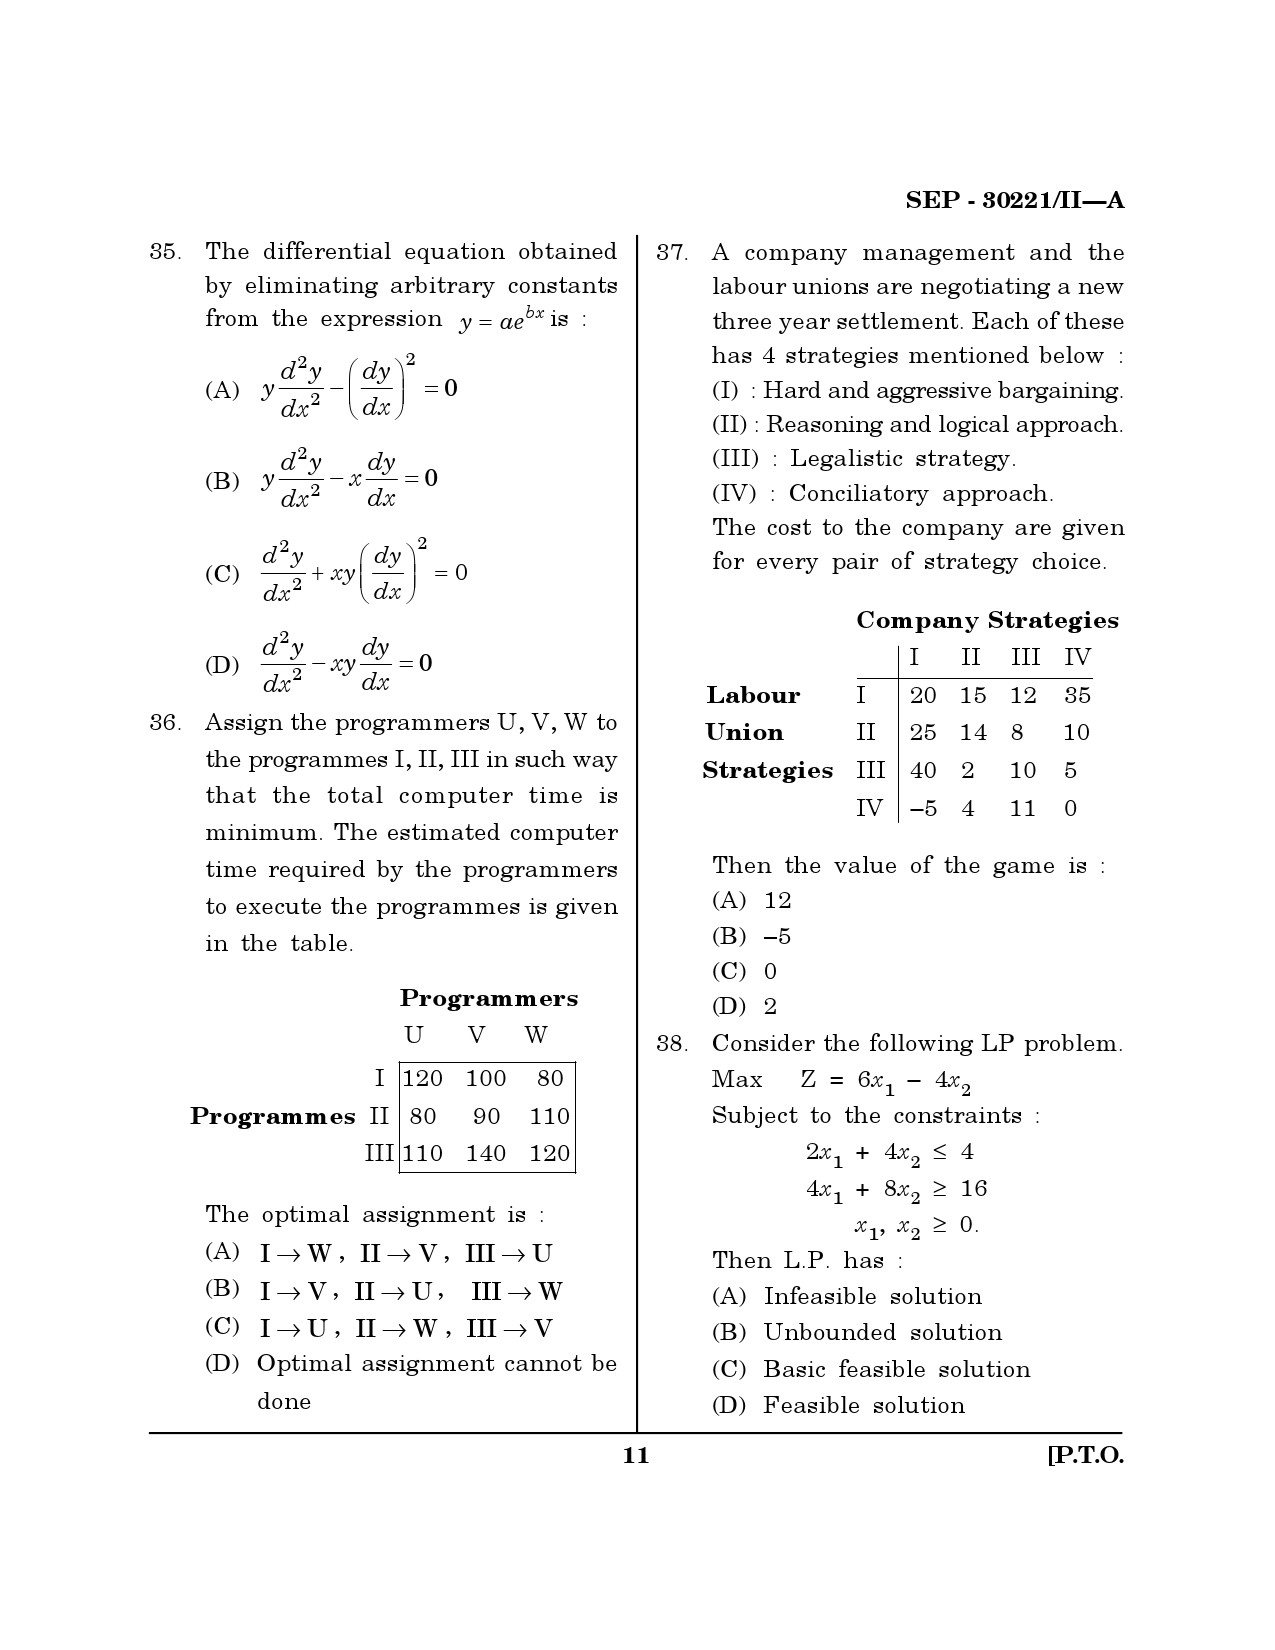 Maharashtra SET Mathematical Sciences Exam Question Paper September 2021 10